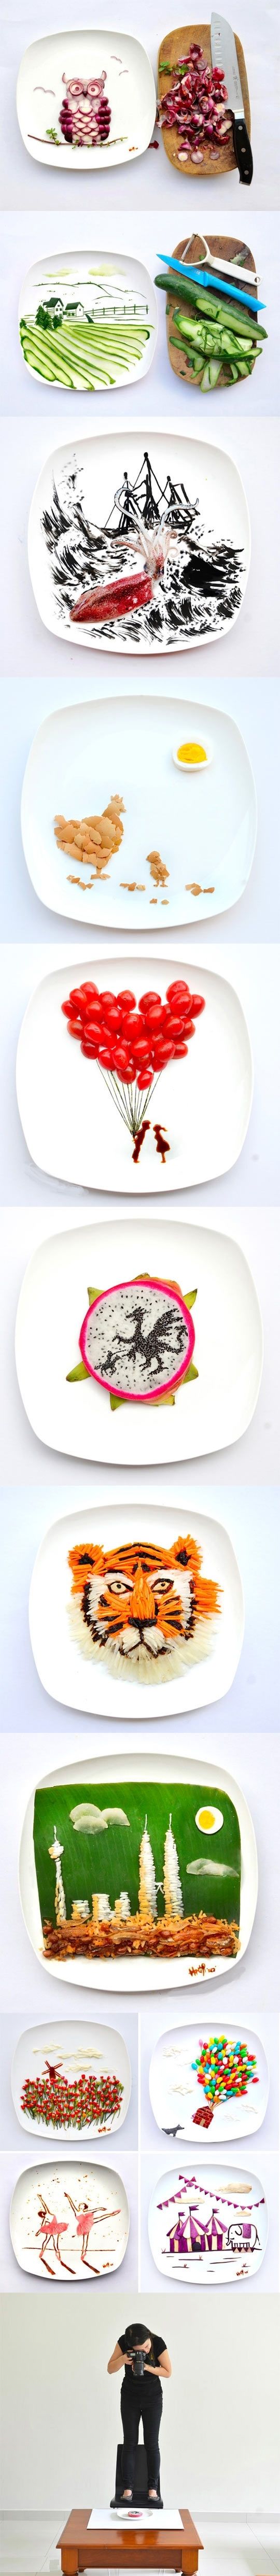 Food art.